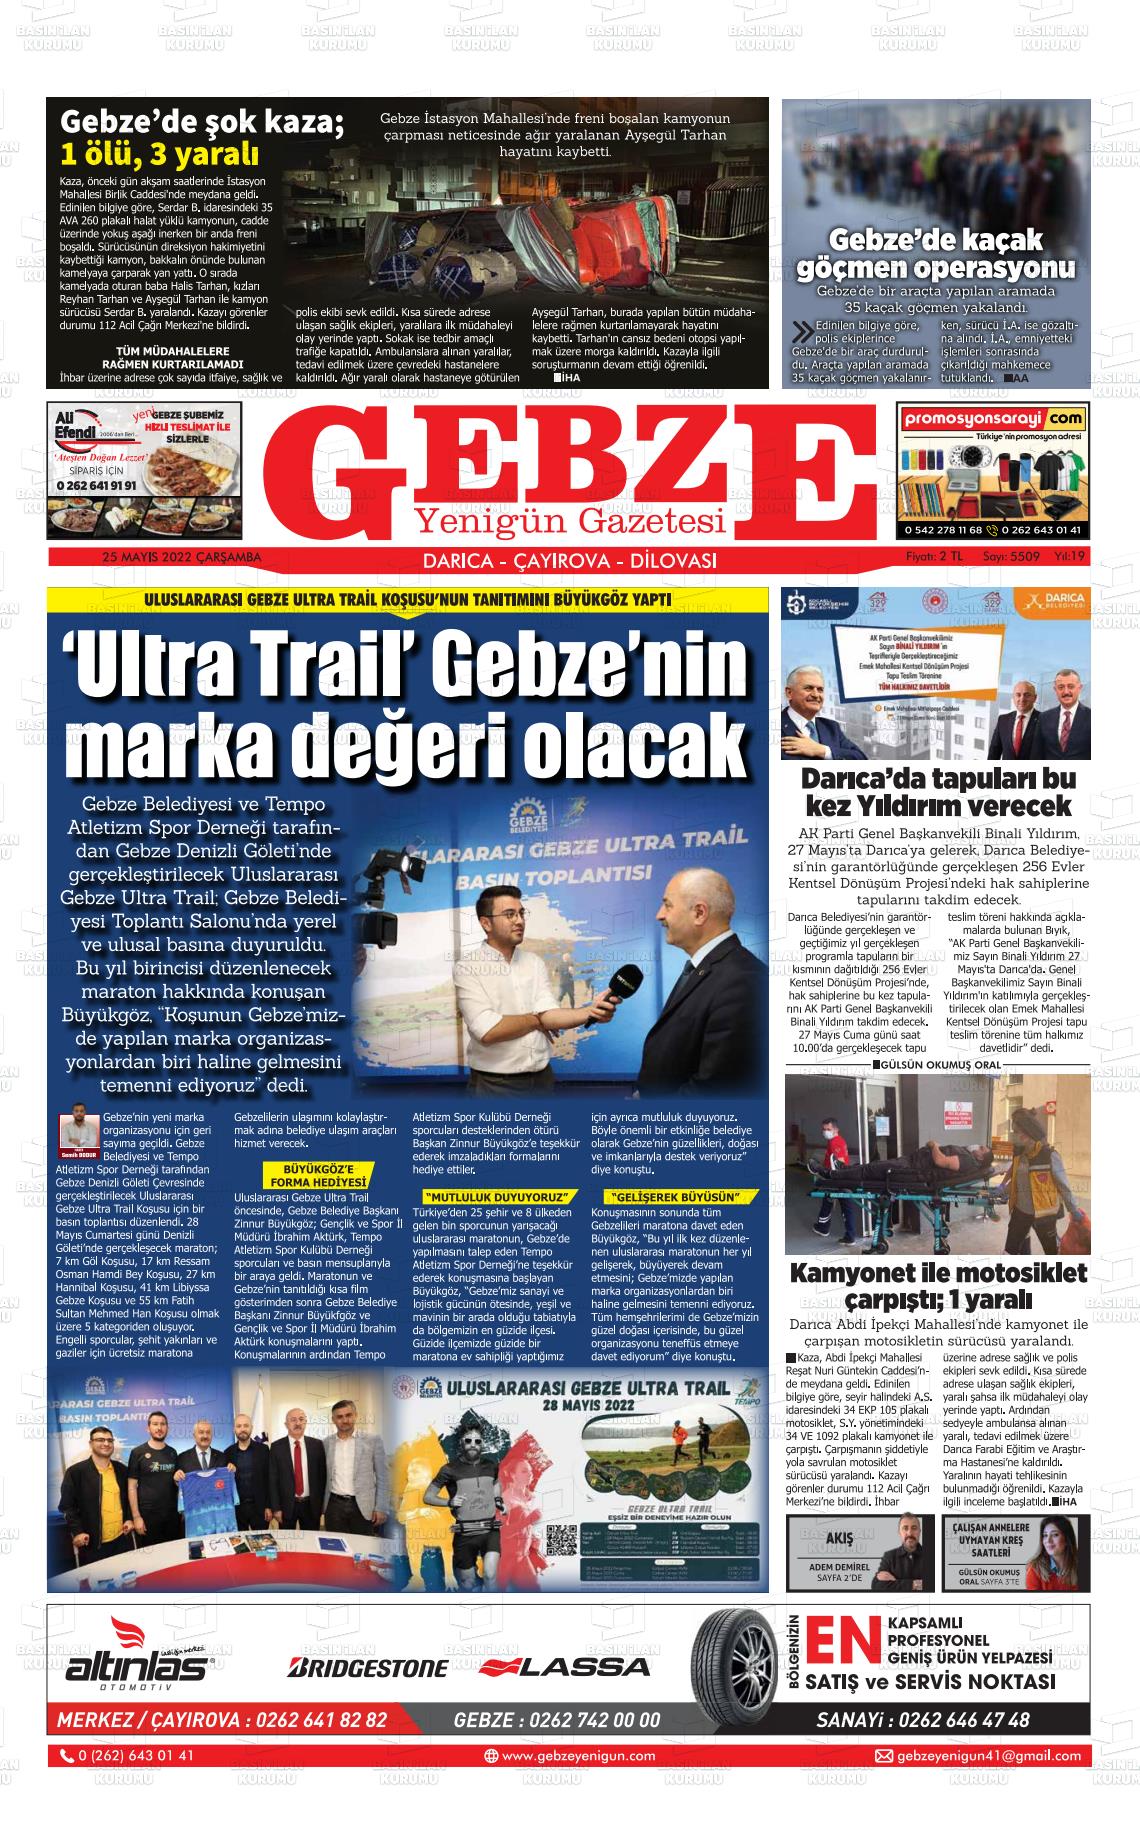 25 Mayıs 2022 Gebze Yenigün Gazete Manşeti